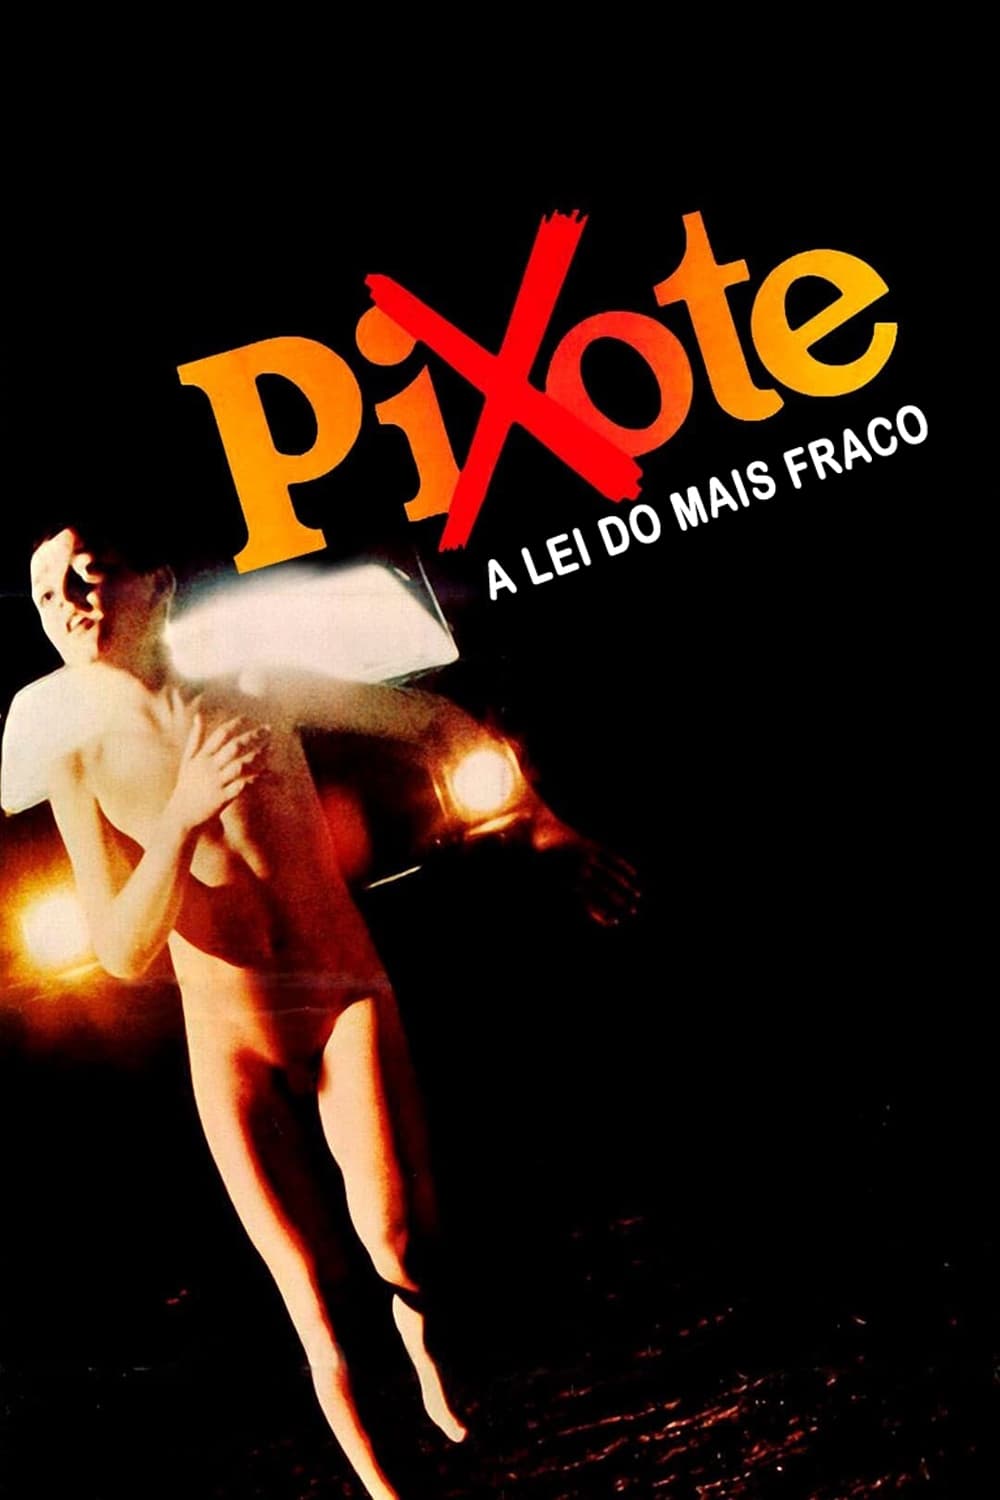 Pixote, la legge del più debole film